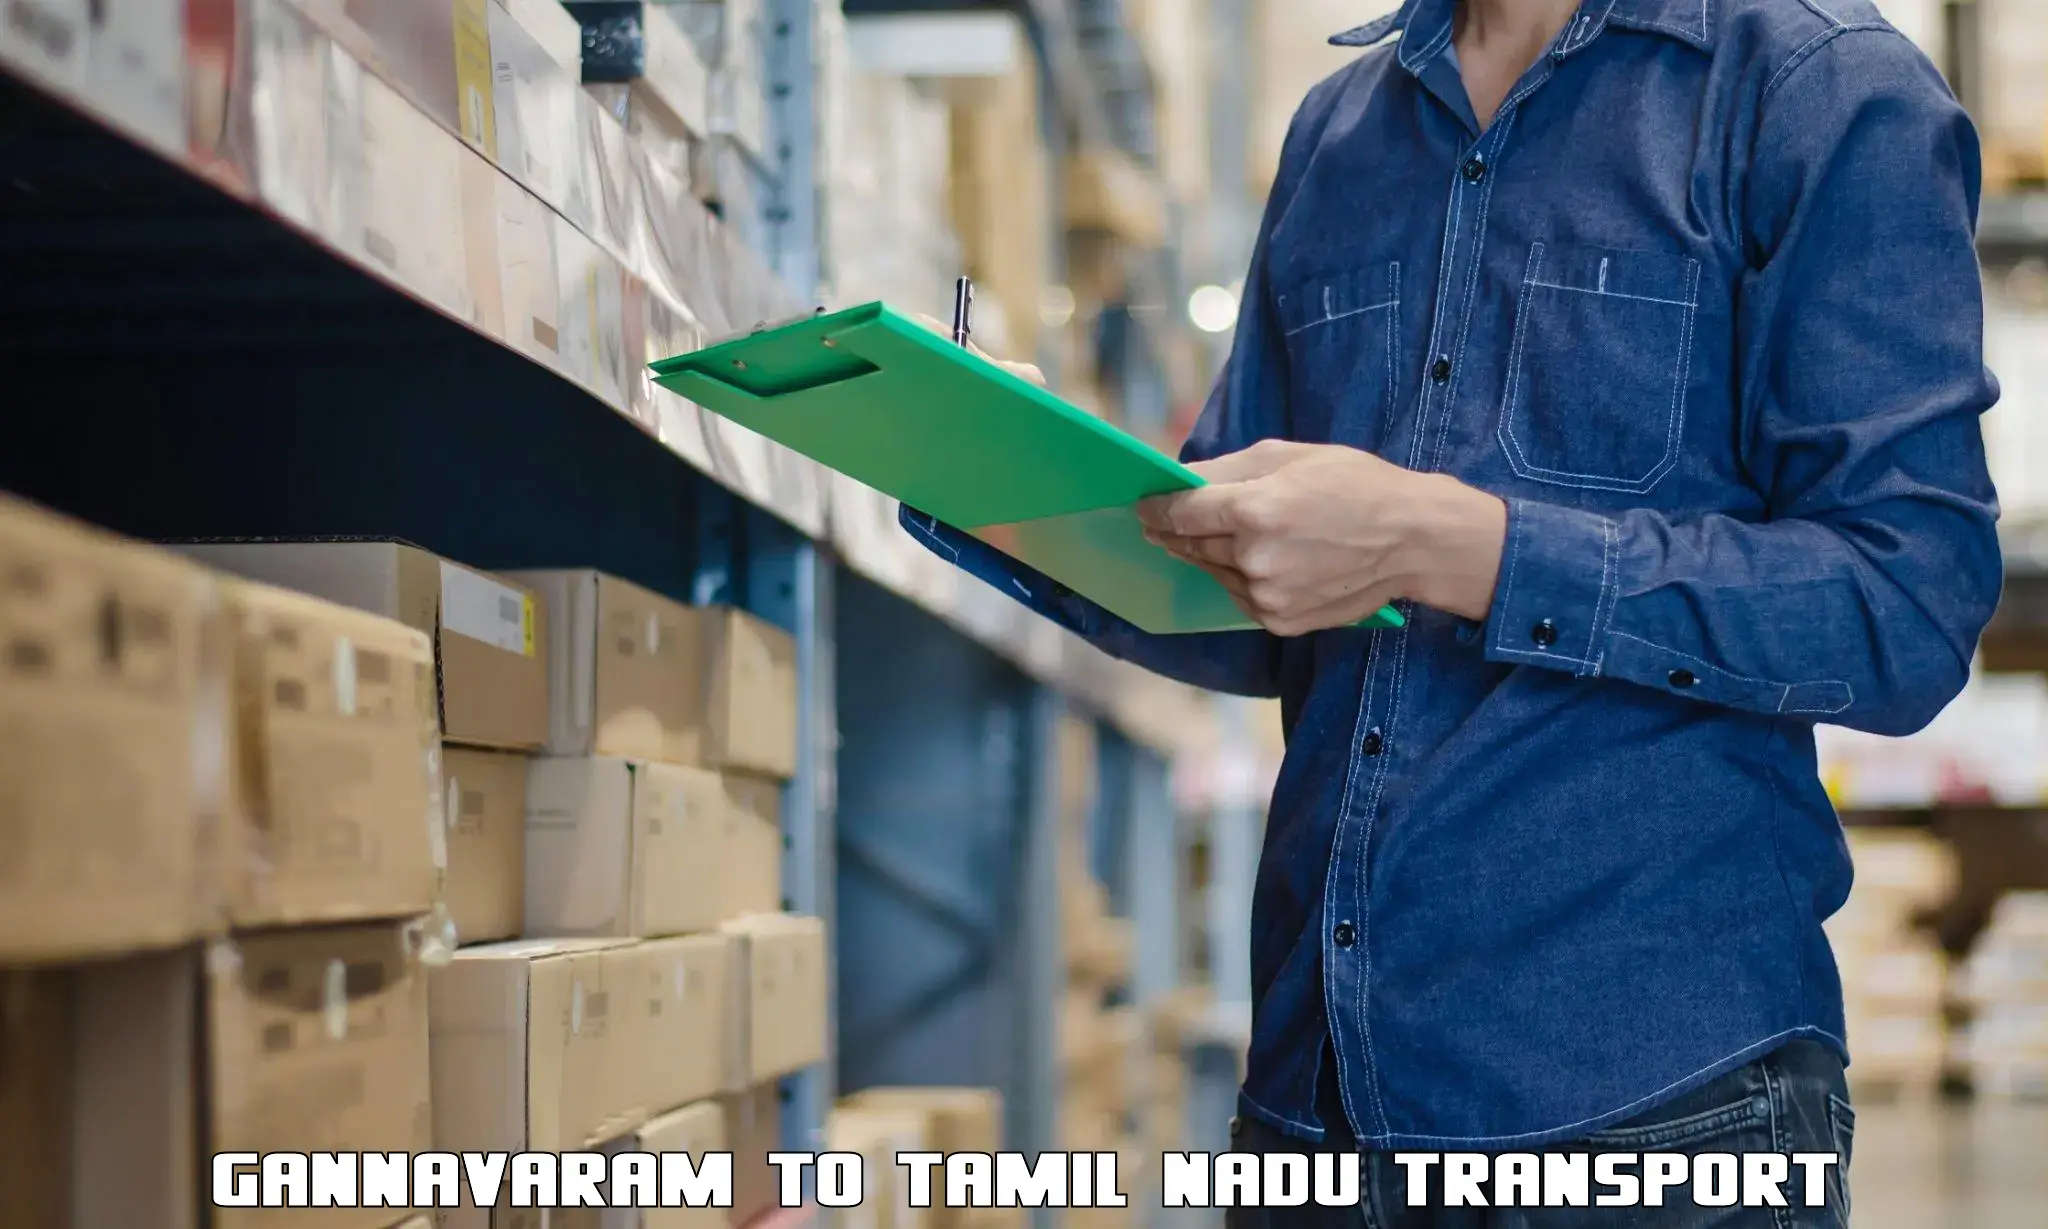 Furniture transport service Gannavaram to Ambur